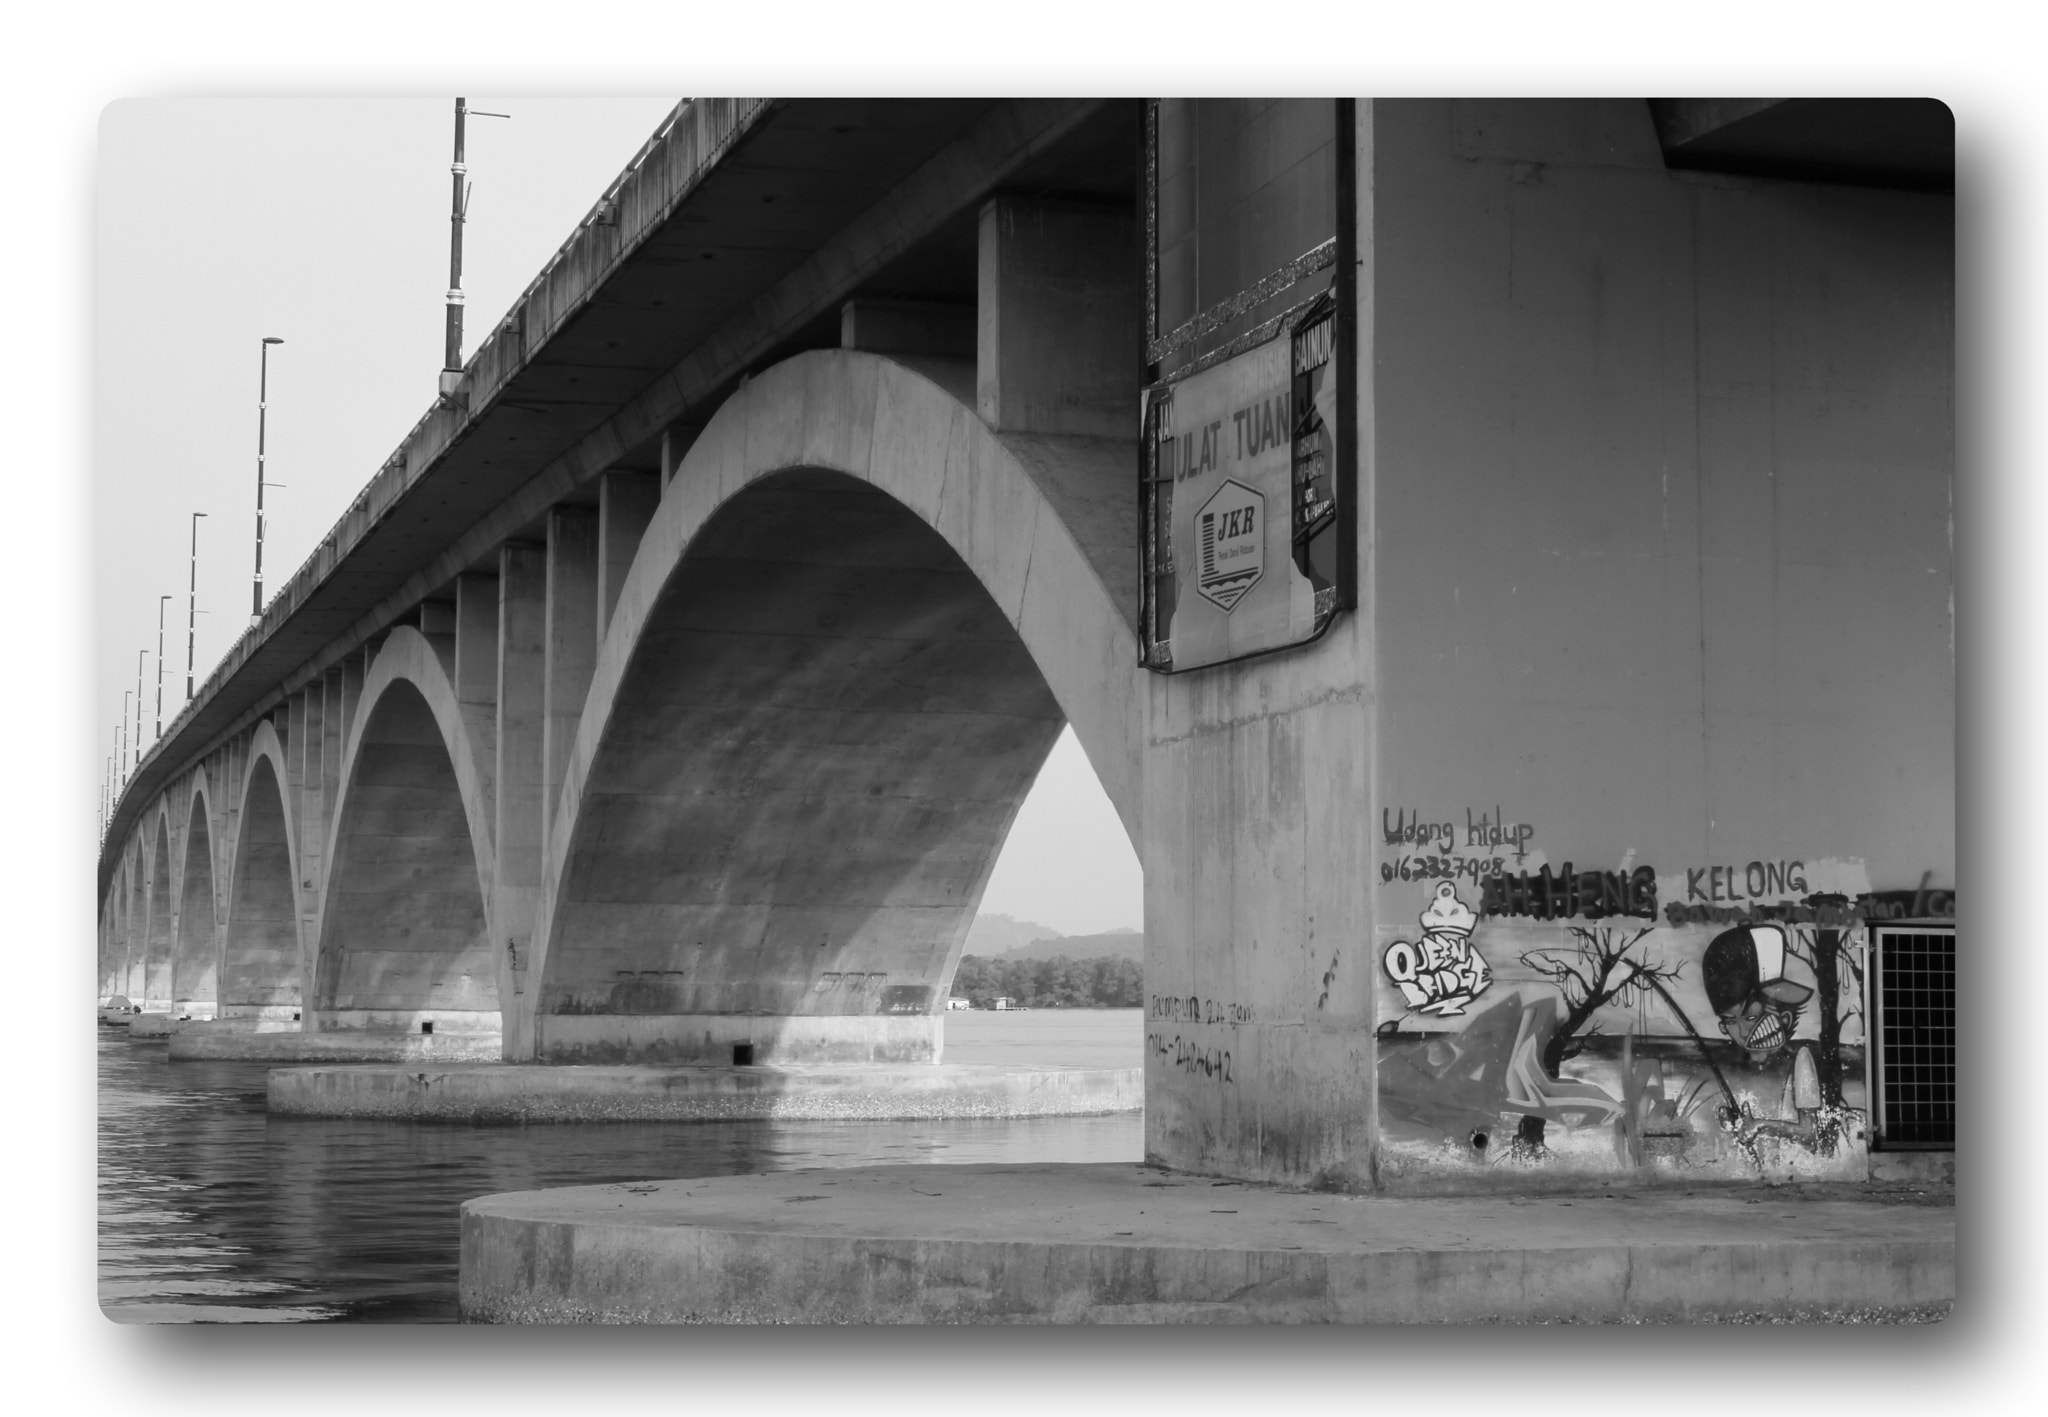 Canon EOS 7D sample photo. Tuanku bainun bridge #02 photography